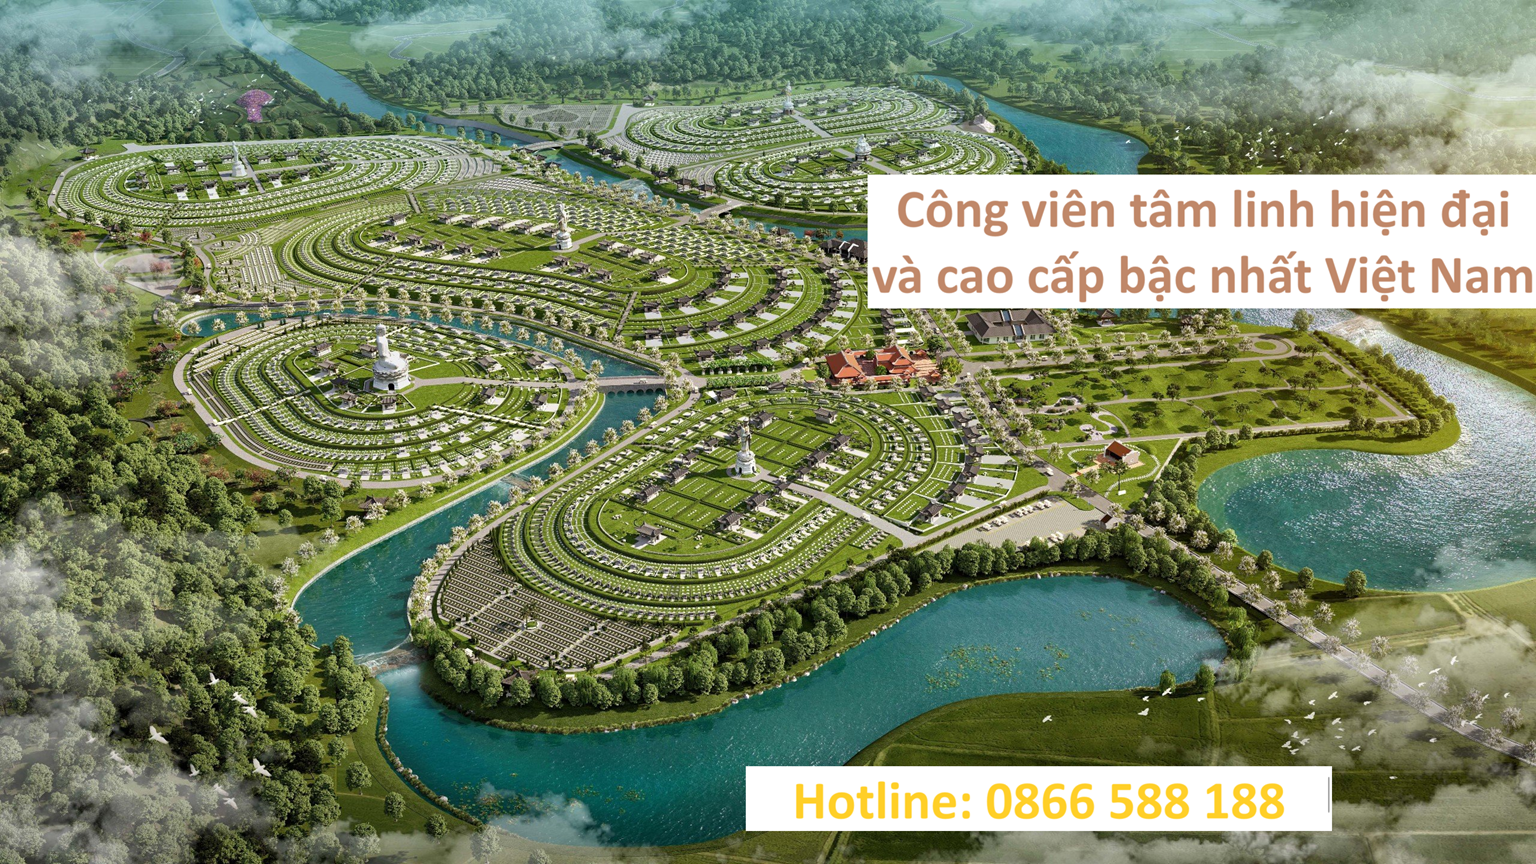 Tilte Công Viên Nghĩa Trang Thiên Đường Tuyên Quang - Công viên tâm linh hiện đại và cao cấp bậc nhất Việt Nam